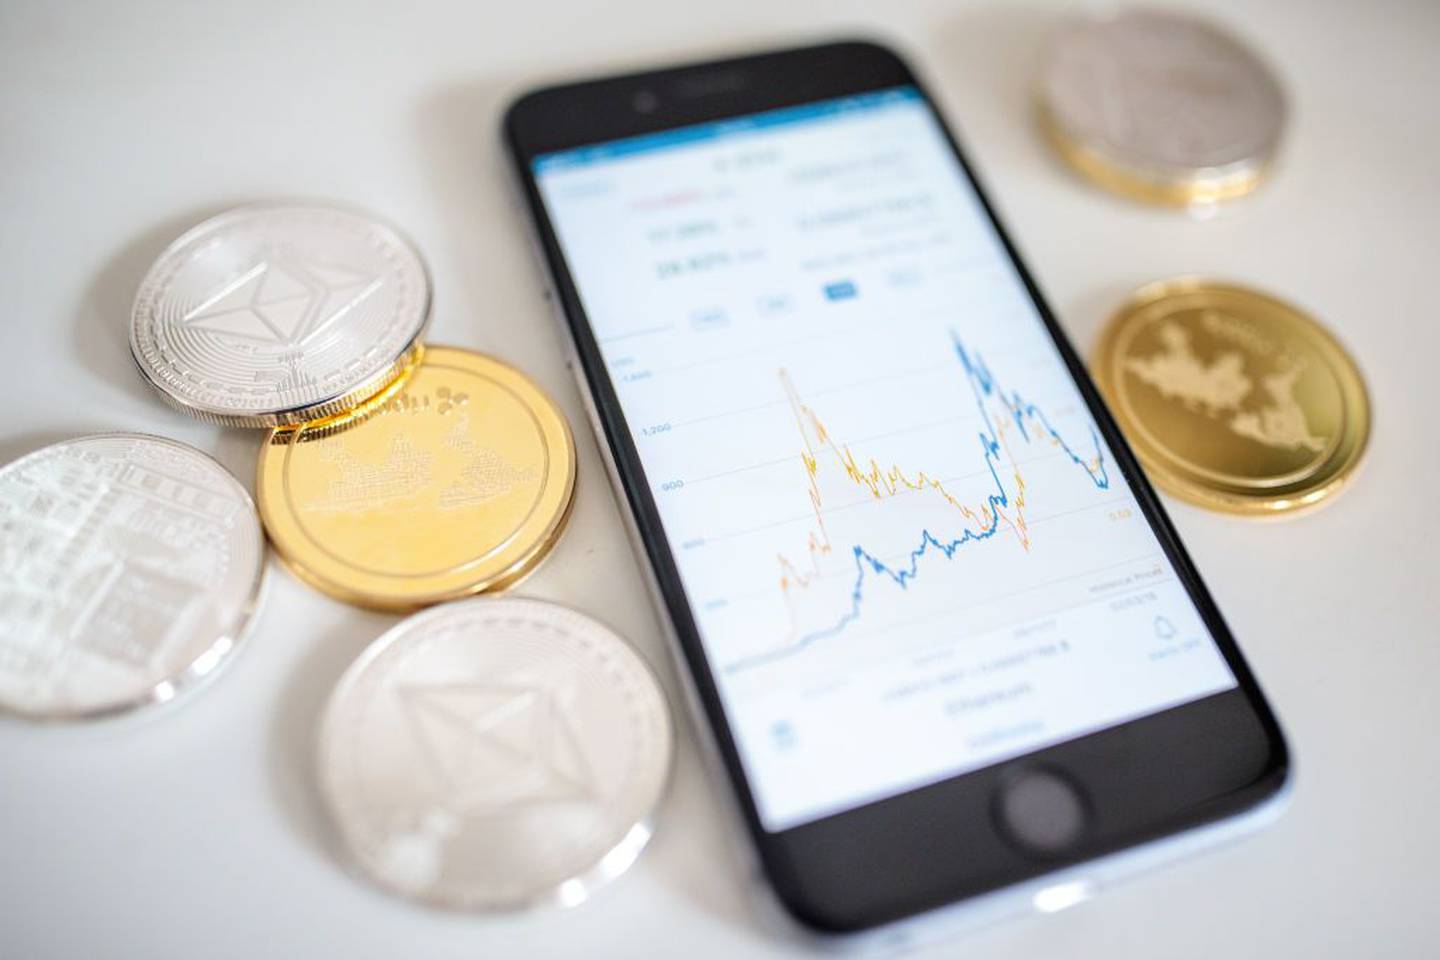 Criptomonedas litecoin, ripple y ethereum 'altcoins' (monedas alternativas) junto a un teléfono inteligente que muestra el gráfico de precios actual.